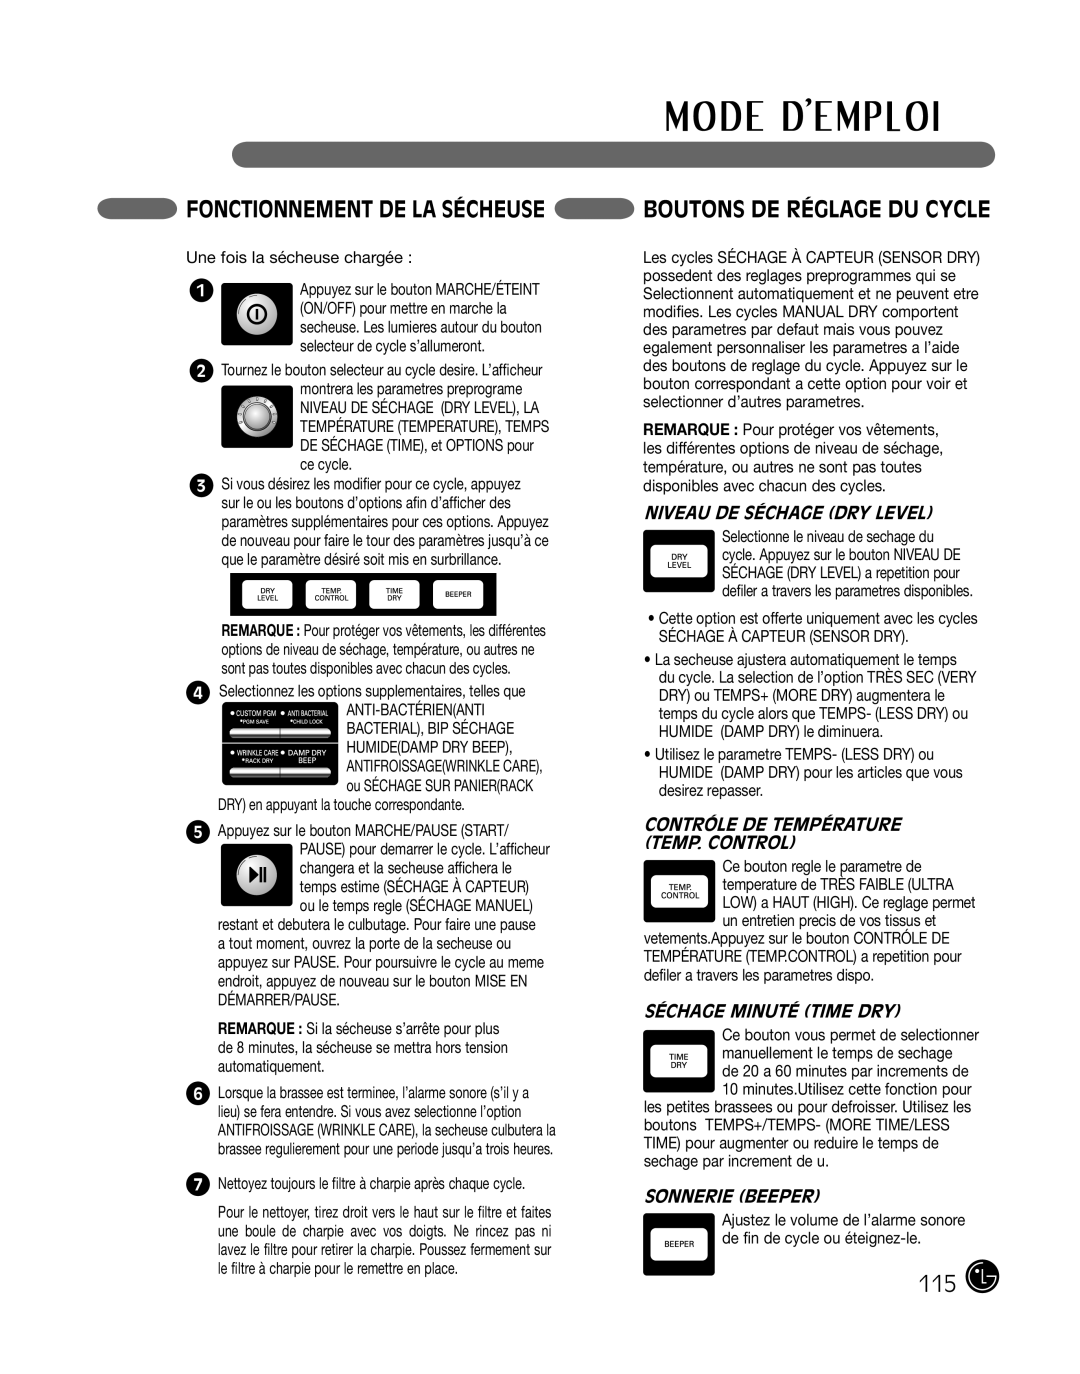 LG Electronics P154 manual Fonctionnement De La Sécheuse Boutons De Réglage Du Cycle, Niveau De Séchage Dry Level 